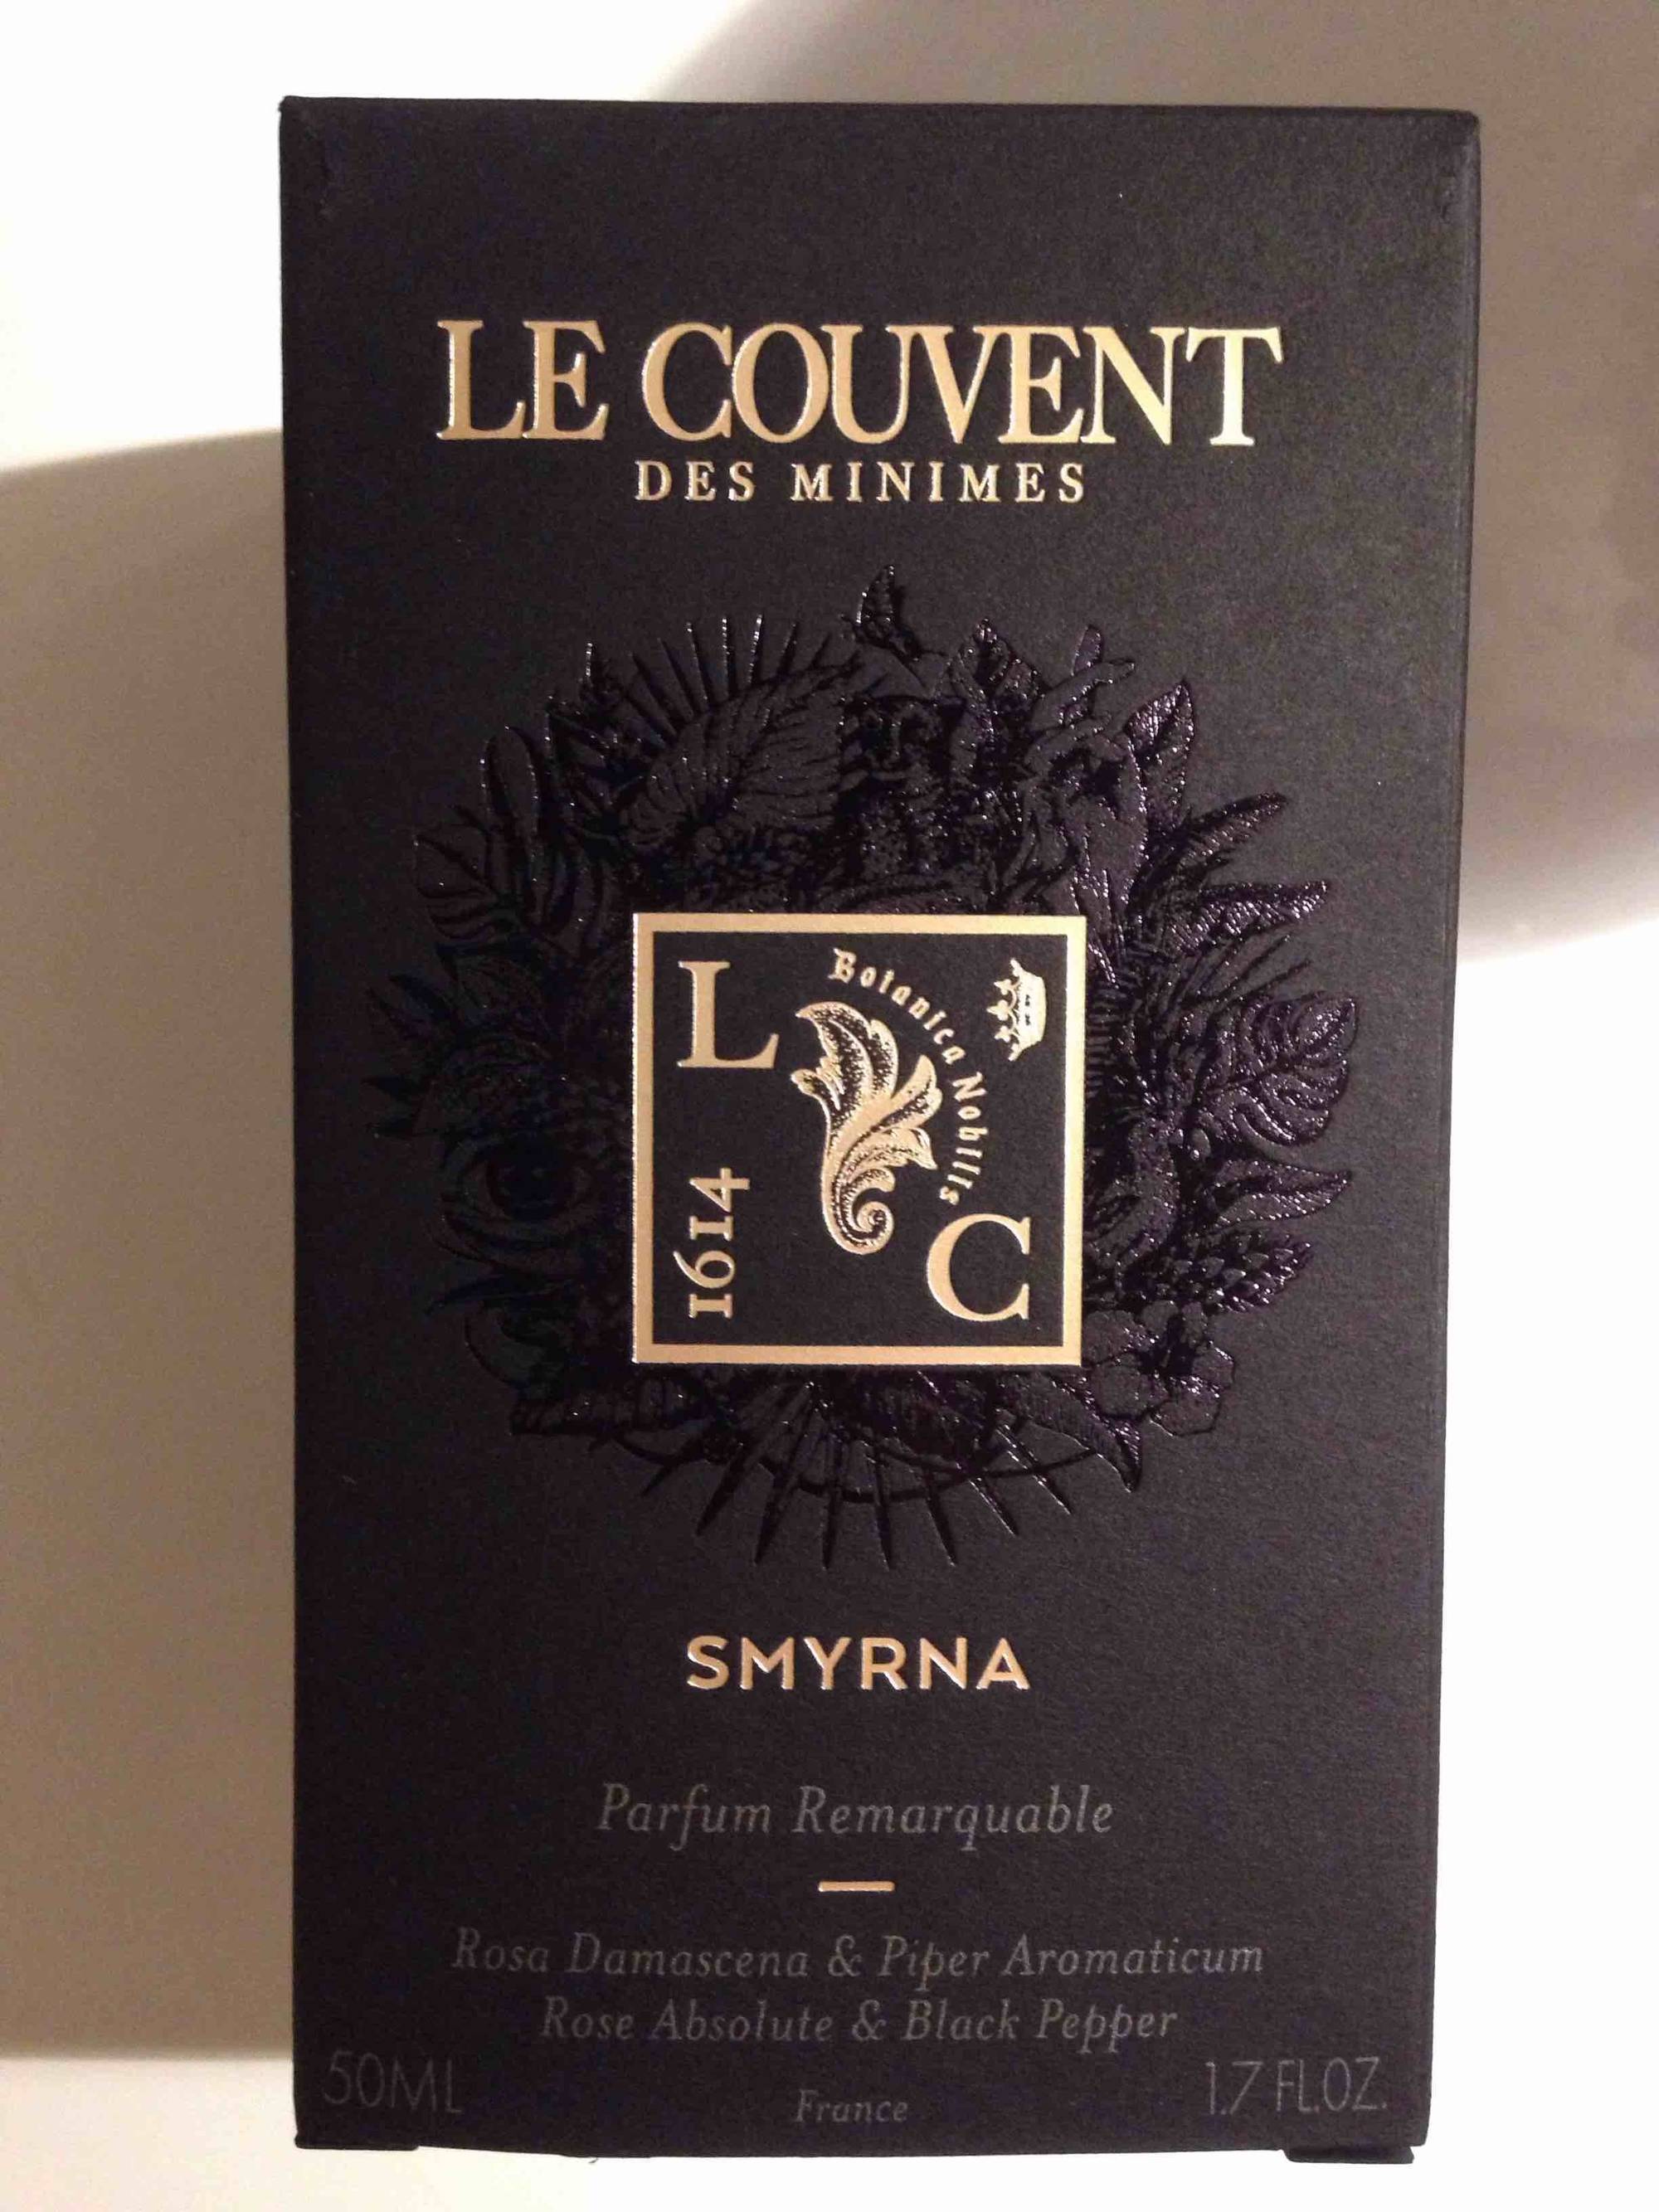 LE COUVENT DES MINIMES - Smyrna - Parfum remarquable